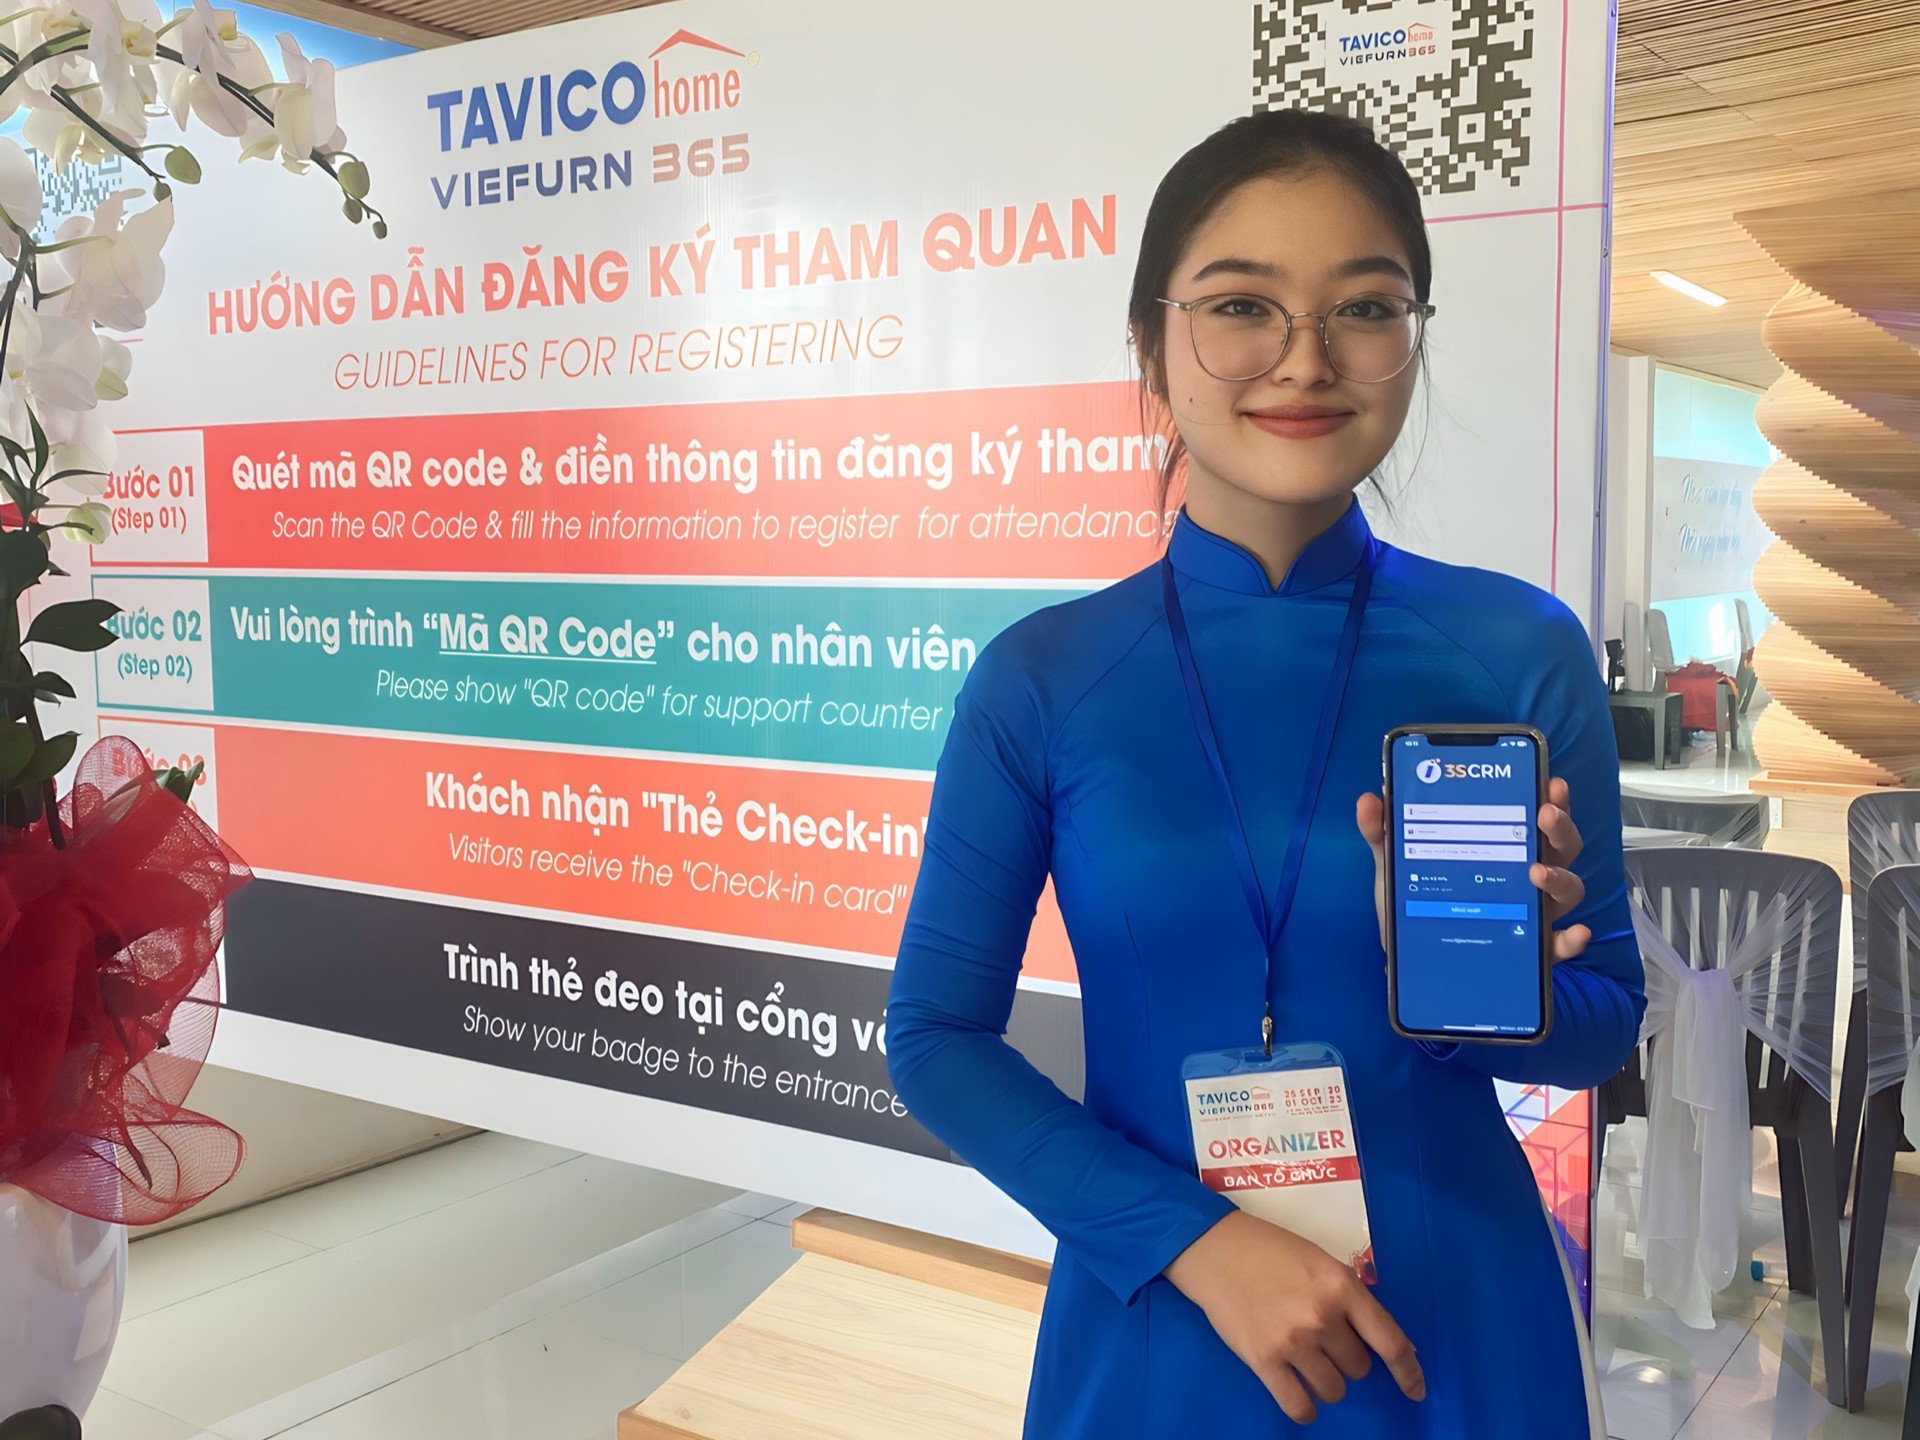 tavico - Tavico ứng dụng phần mềm quản trị quan hệ khách hàng 3S CRM tại hội chợ gỗ quy mô lớn - Tavicohome Viefurn 365 Fair